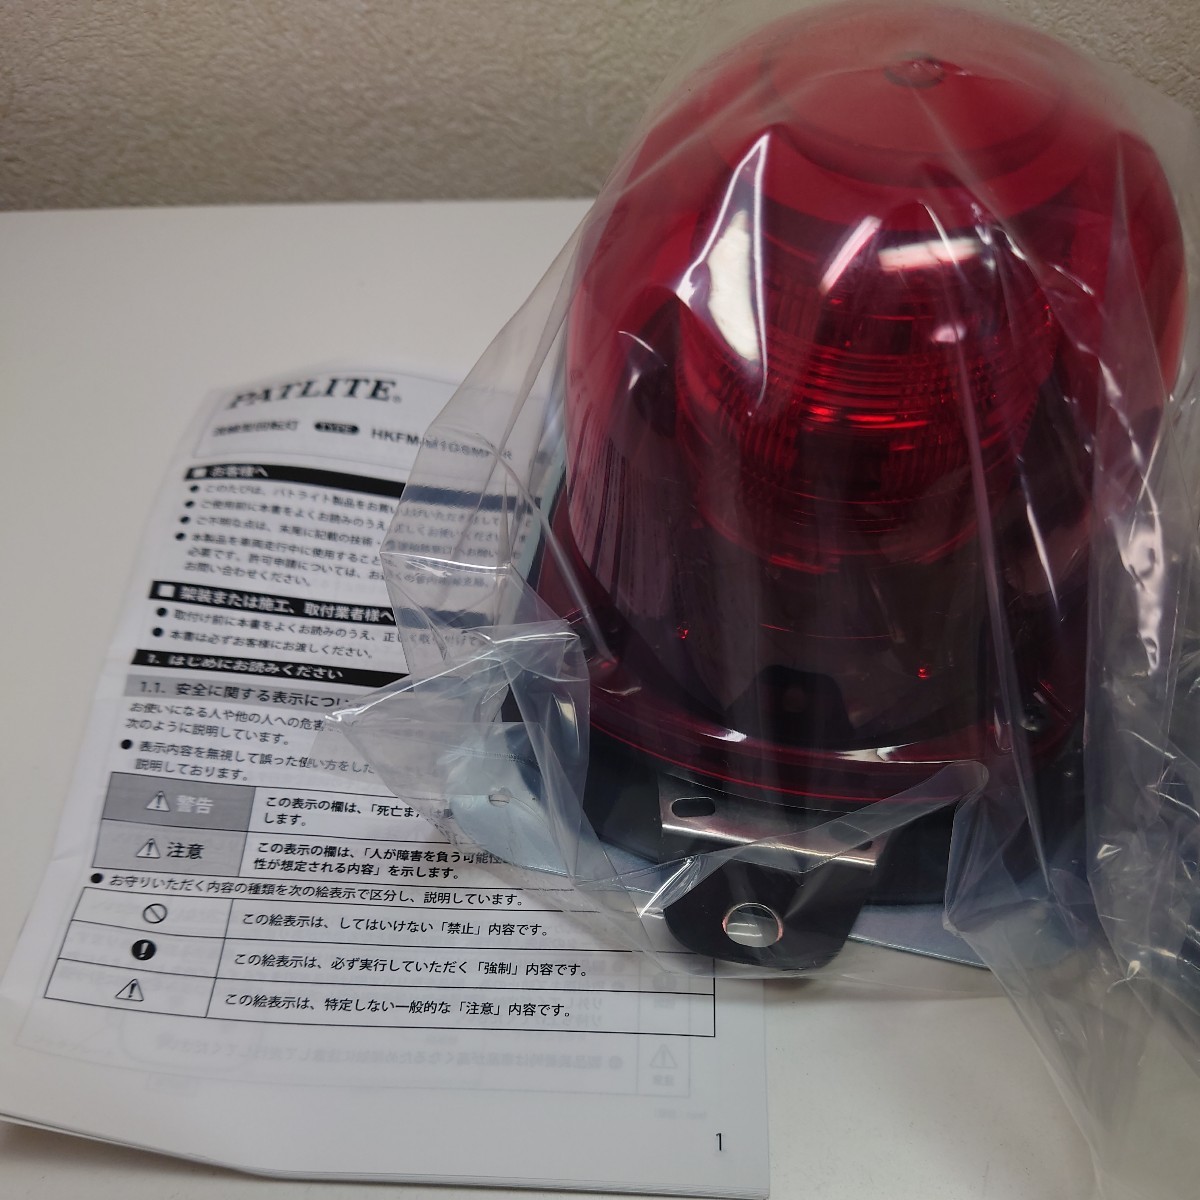 ◆パトカー◆新品 パトライト LED式 流線型回転灯 HKFM-M1GSMF-R 赤 メタルコンセント_画像3